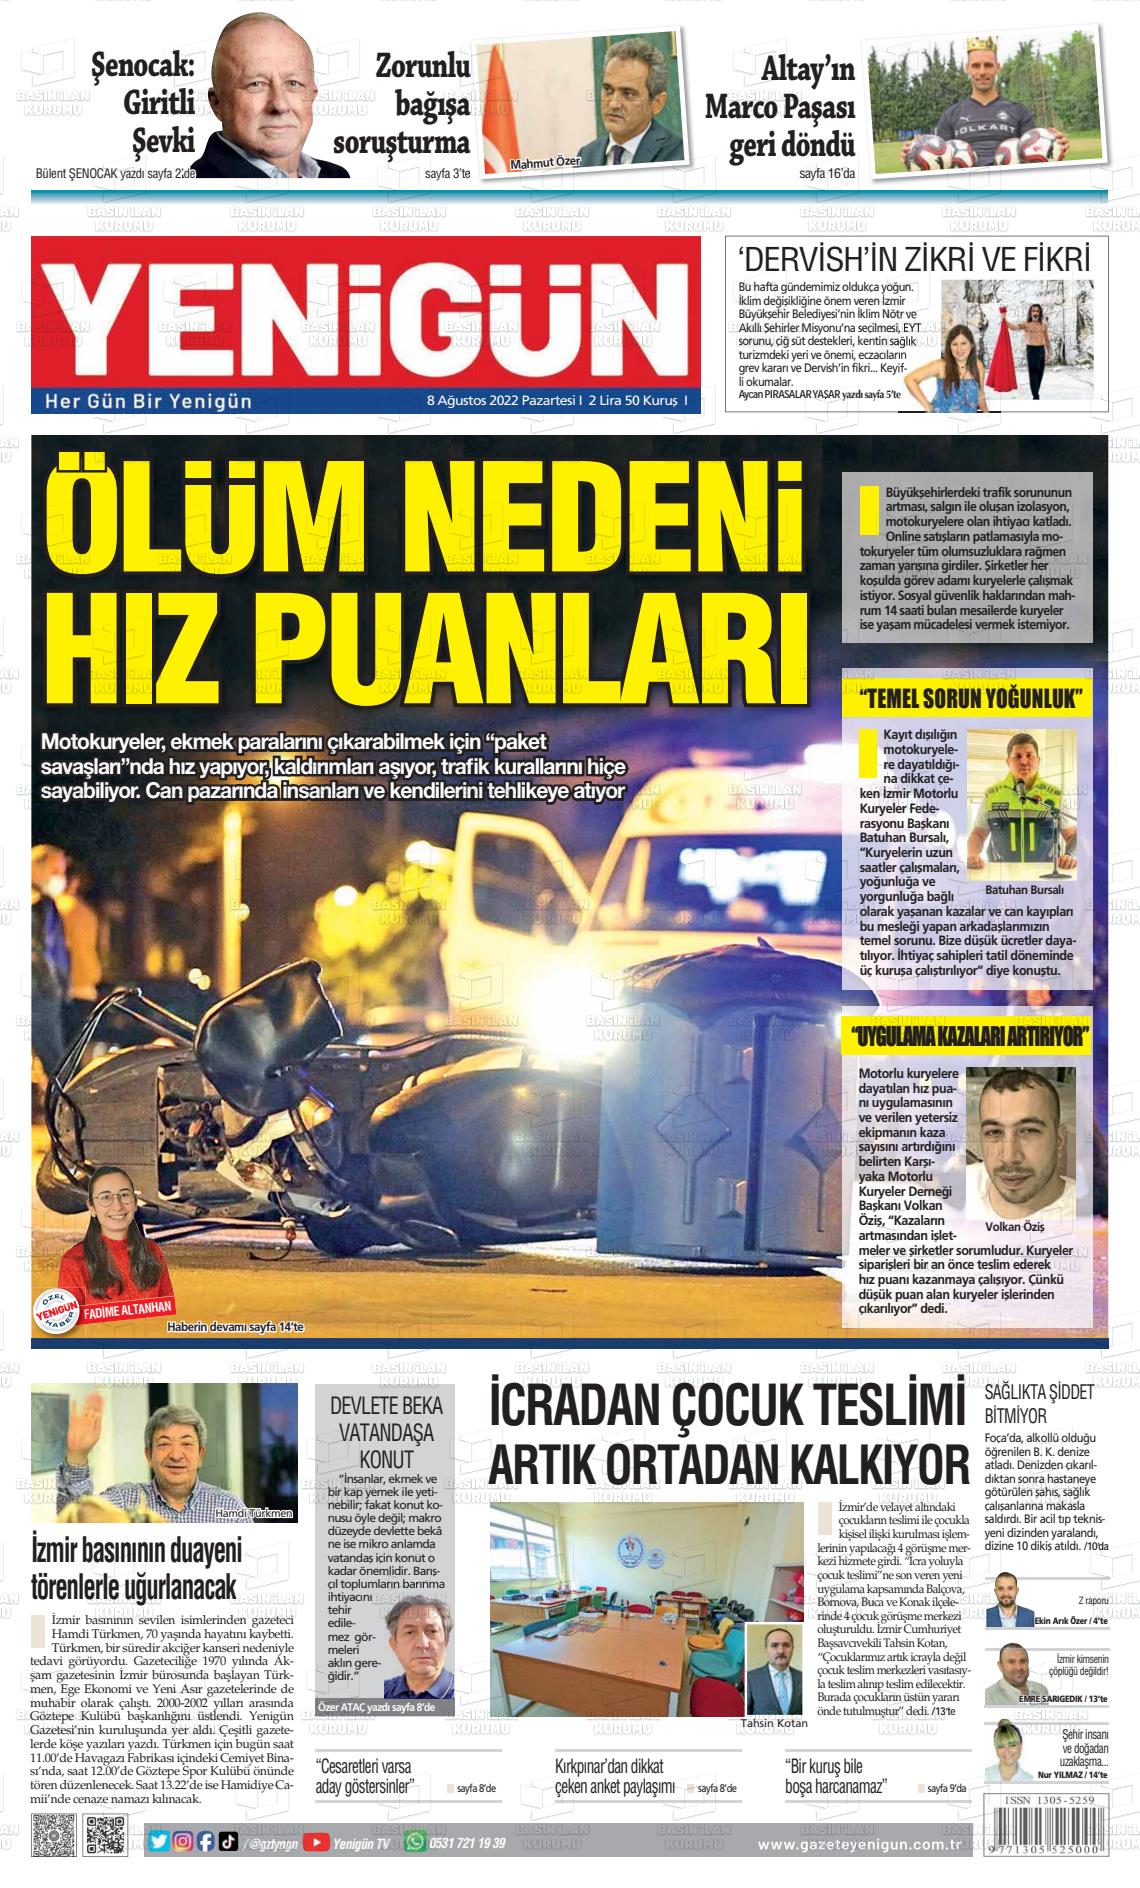 08 Ağustos 2022 Yeni Gün Gazete Manşeti